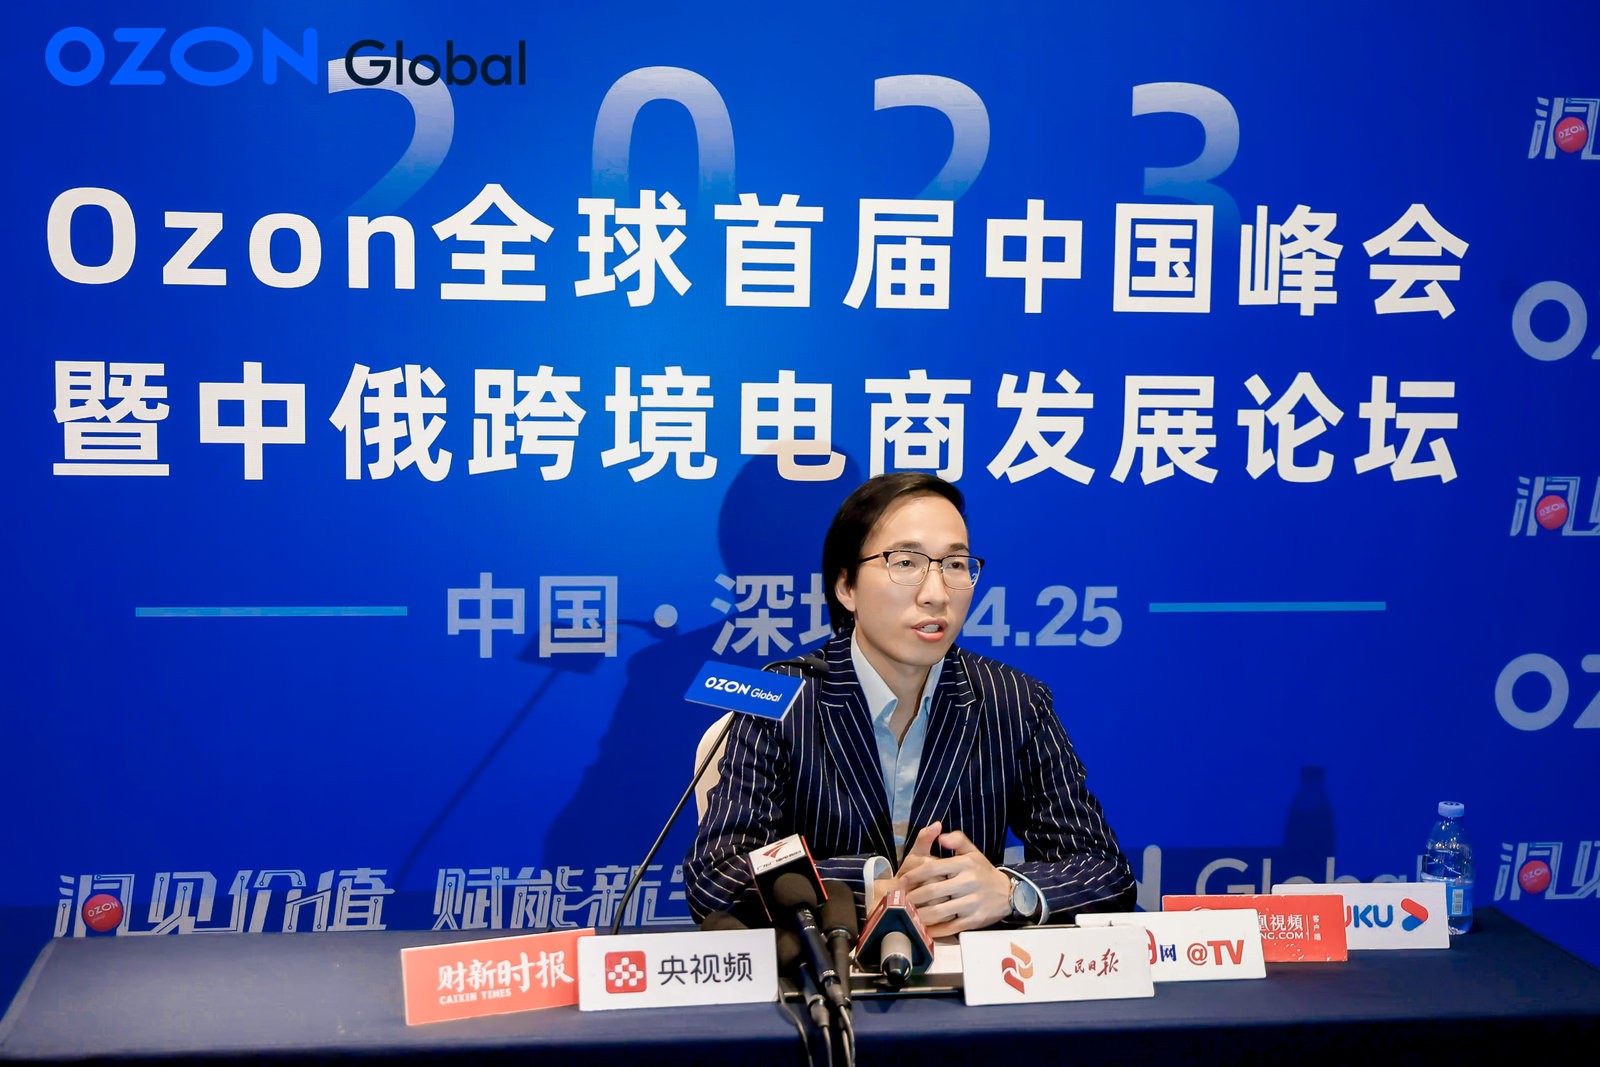 Ozon在华投资发展物流业务并计划帮助超过10万中国卖家进入俄罗斯市场